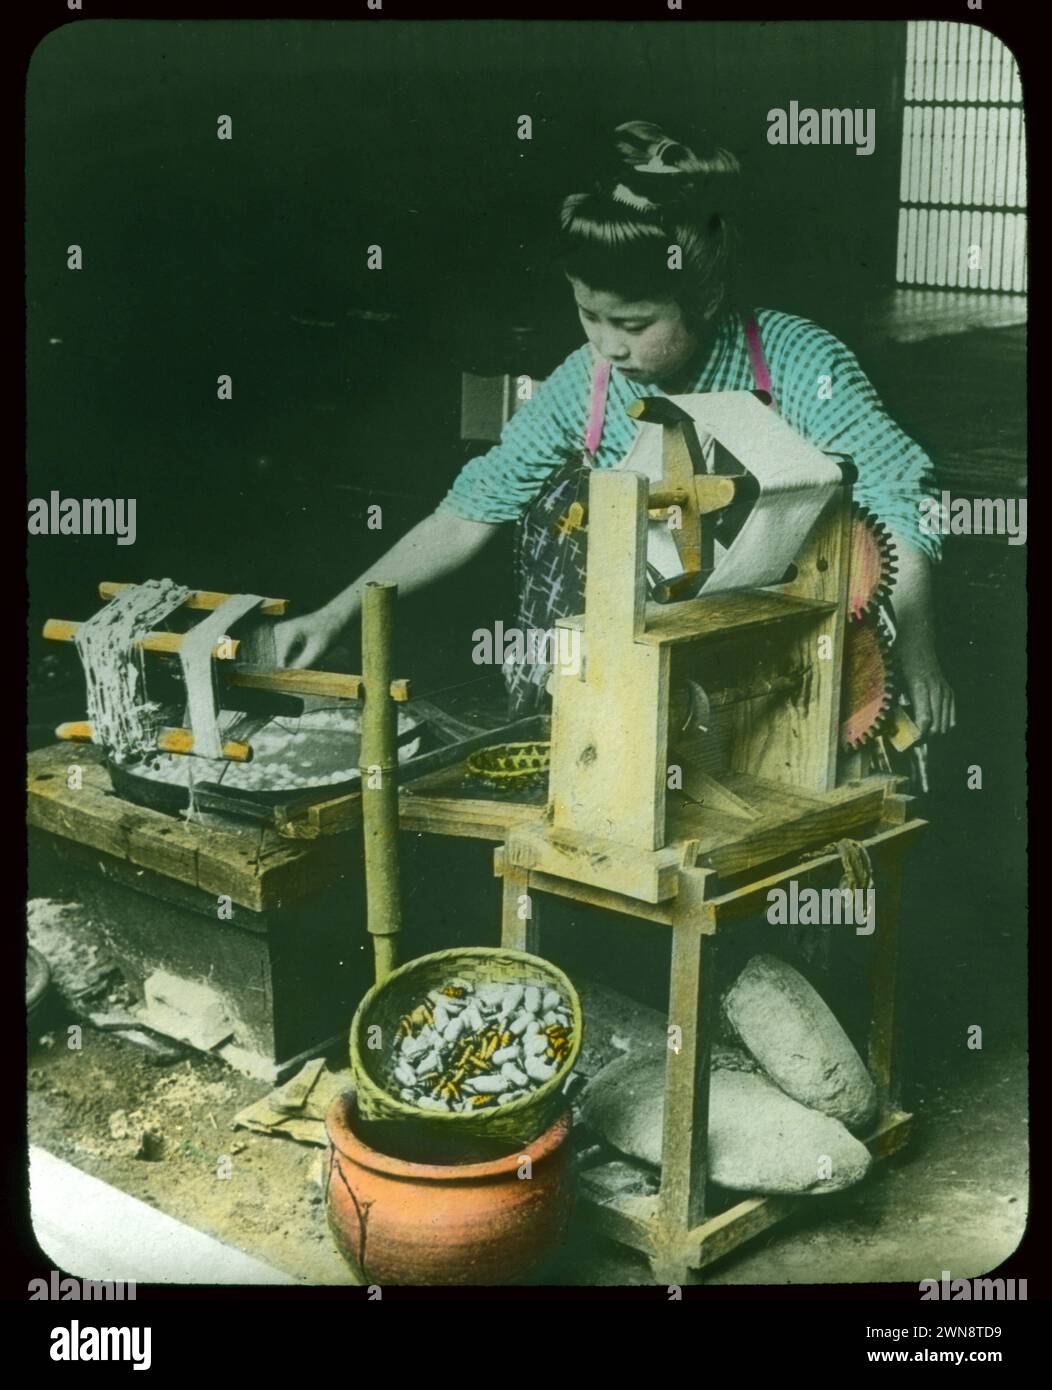 Japaner arbeiten Seide aus Kokkons in rustikale Ausrüstung. Aus Hebert Geddes 'Life in Japan' Kollektion: Handfarbige Vintage-Glasfolien aus der Meiji-Ära. Yokohama, Japan Ende des 19. Jahrhunderts. Diese Bilder von verschiedenen japanischen Künstlern wurden an Besucher verkauft. Stockfoto